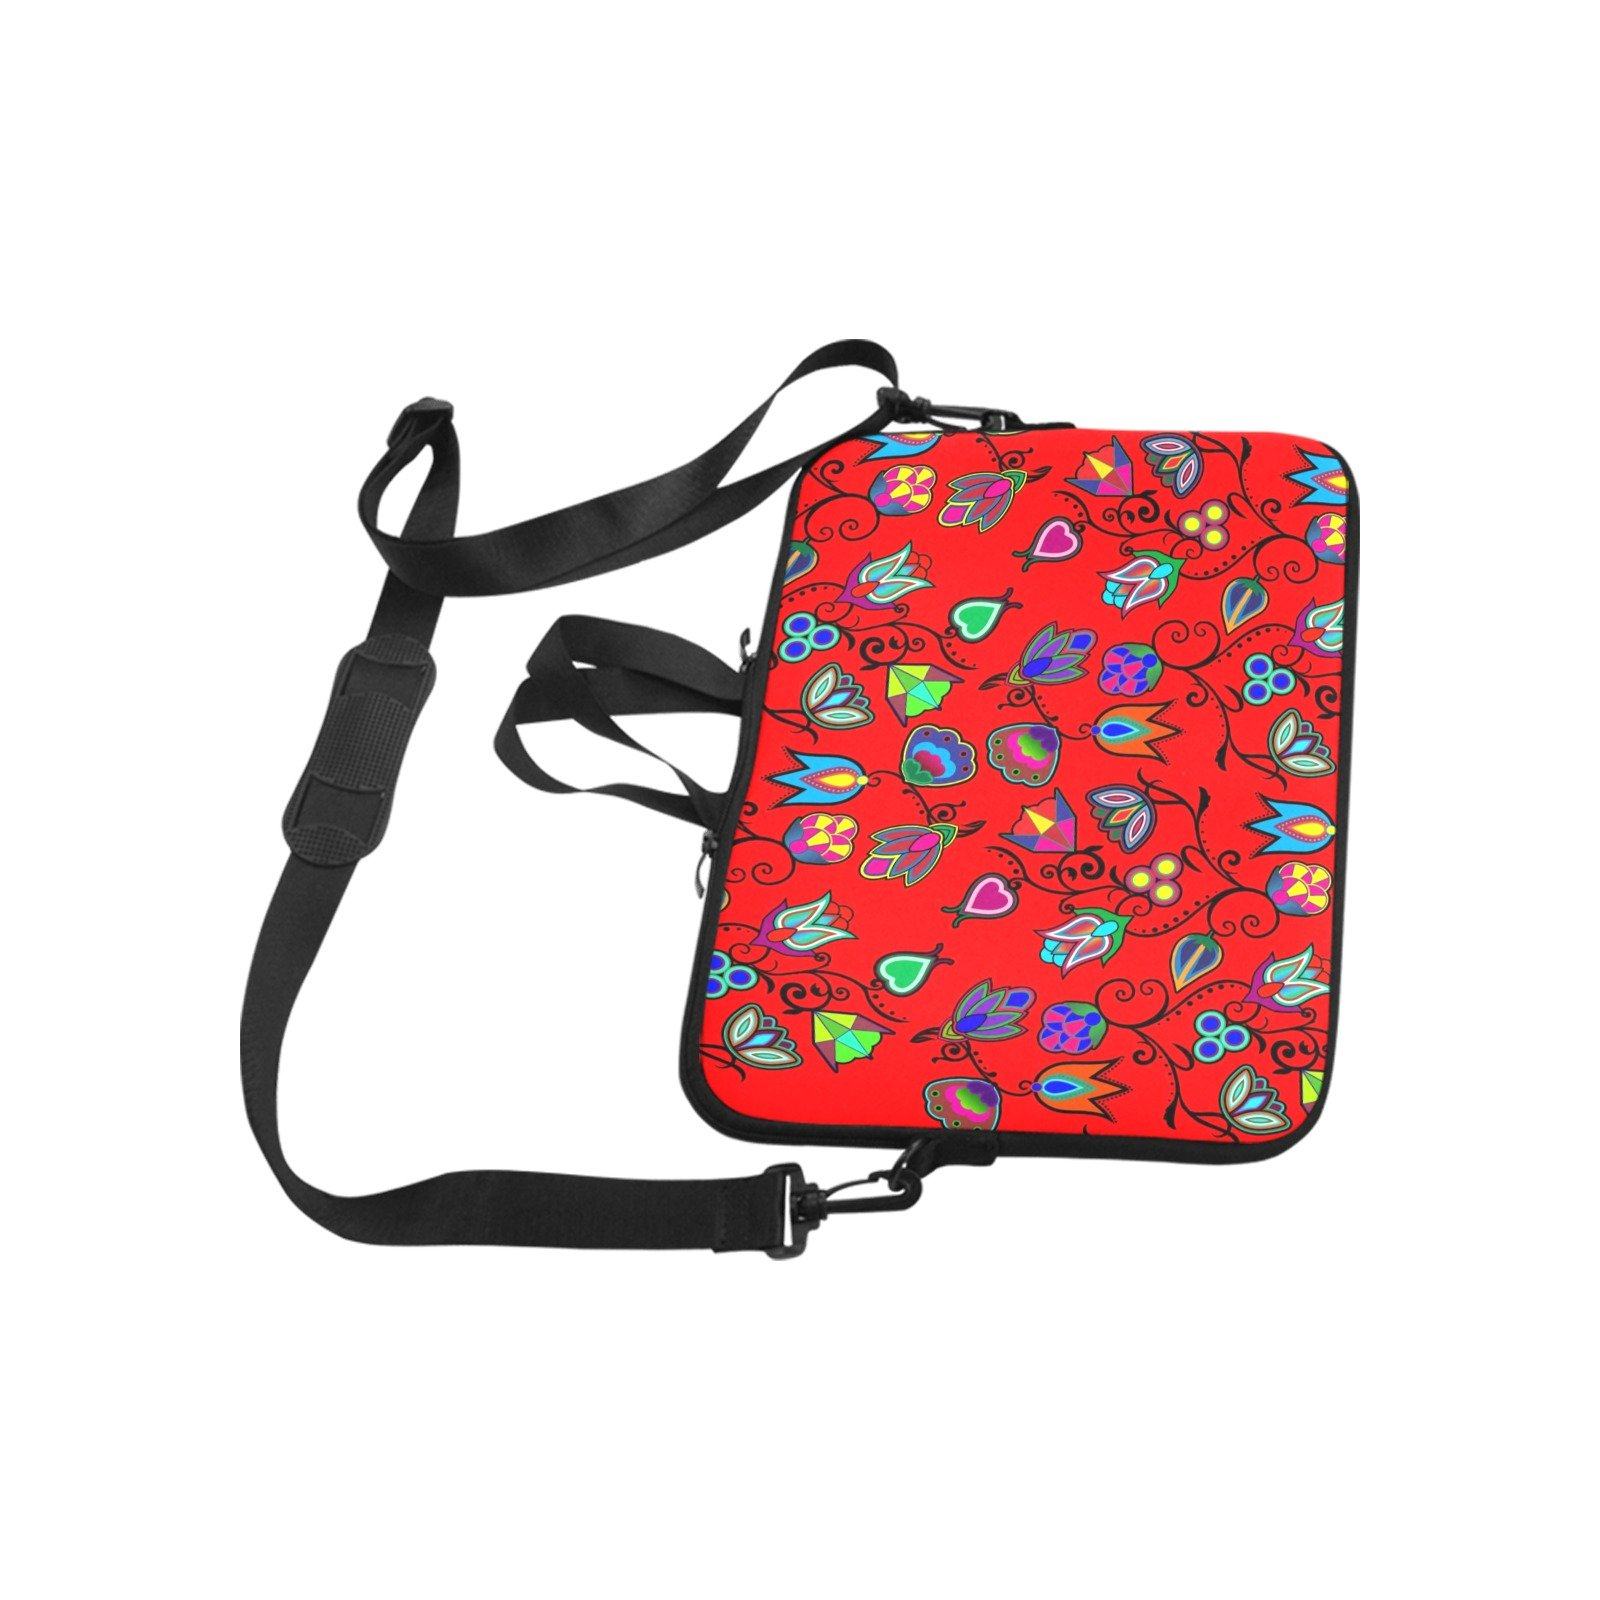 Indigenous Paisley Dahlia Laptop Handbags 14" bag e-joyer 